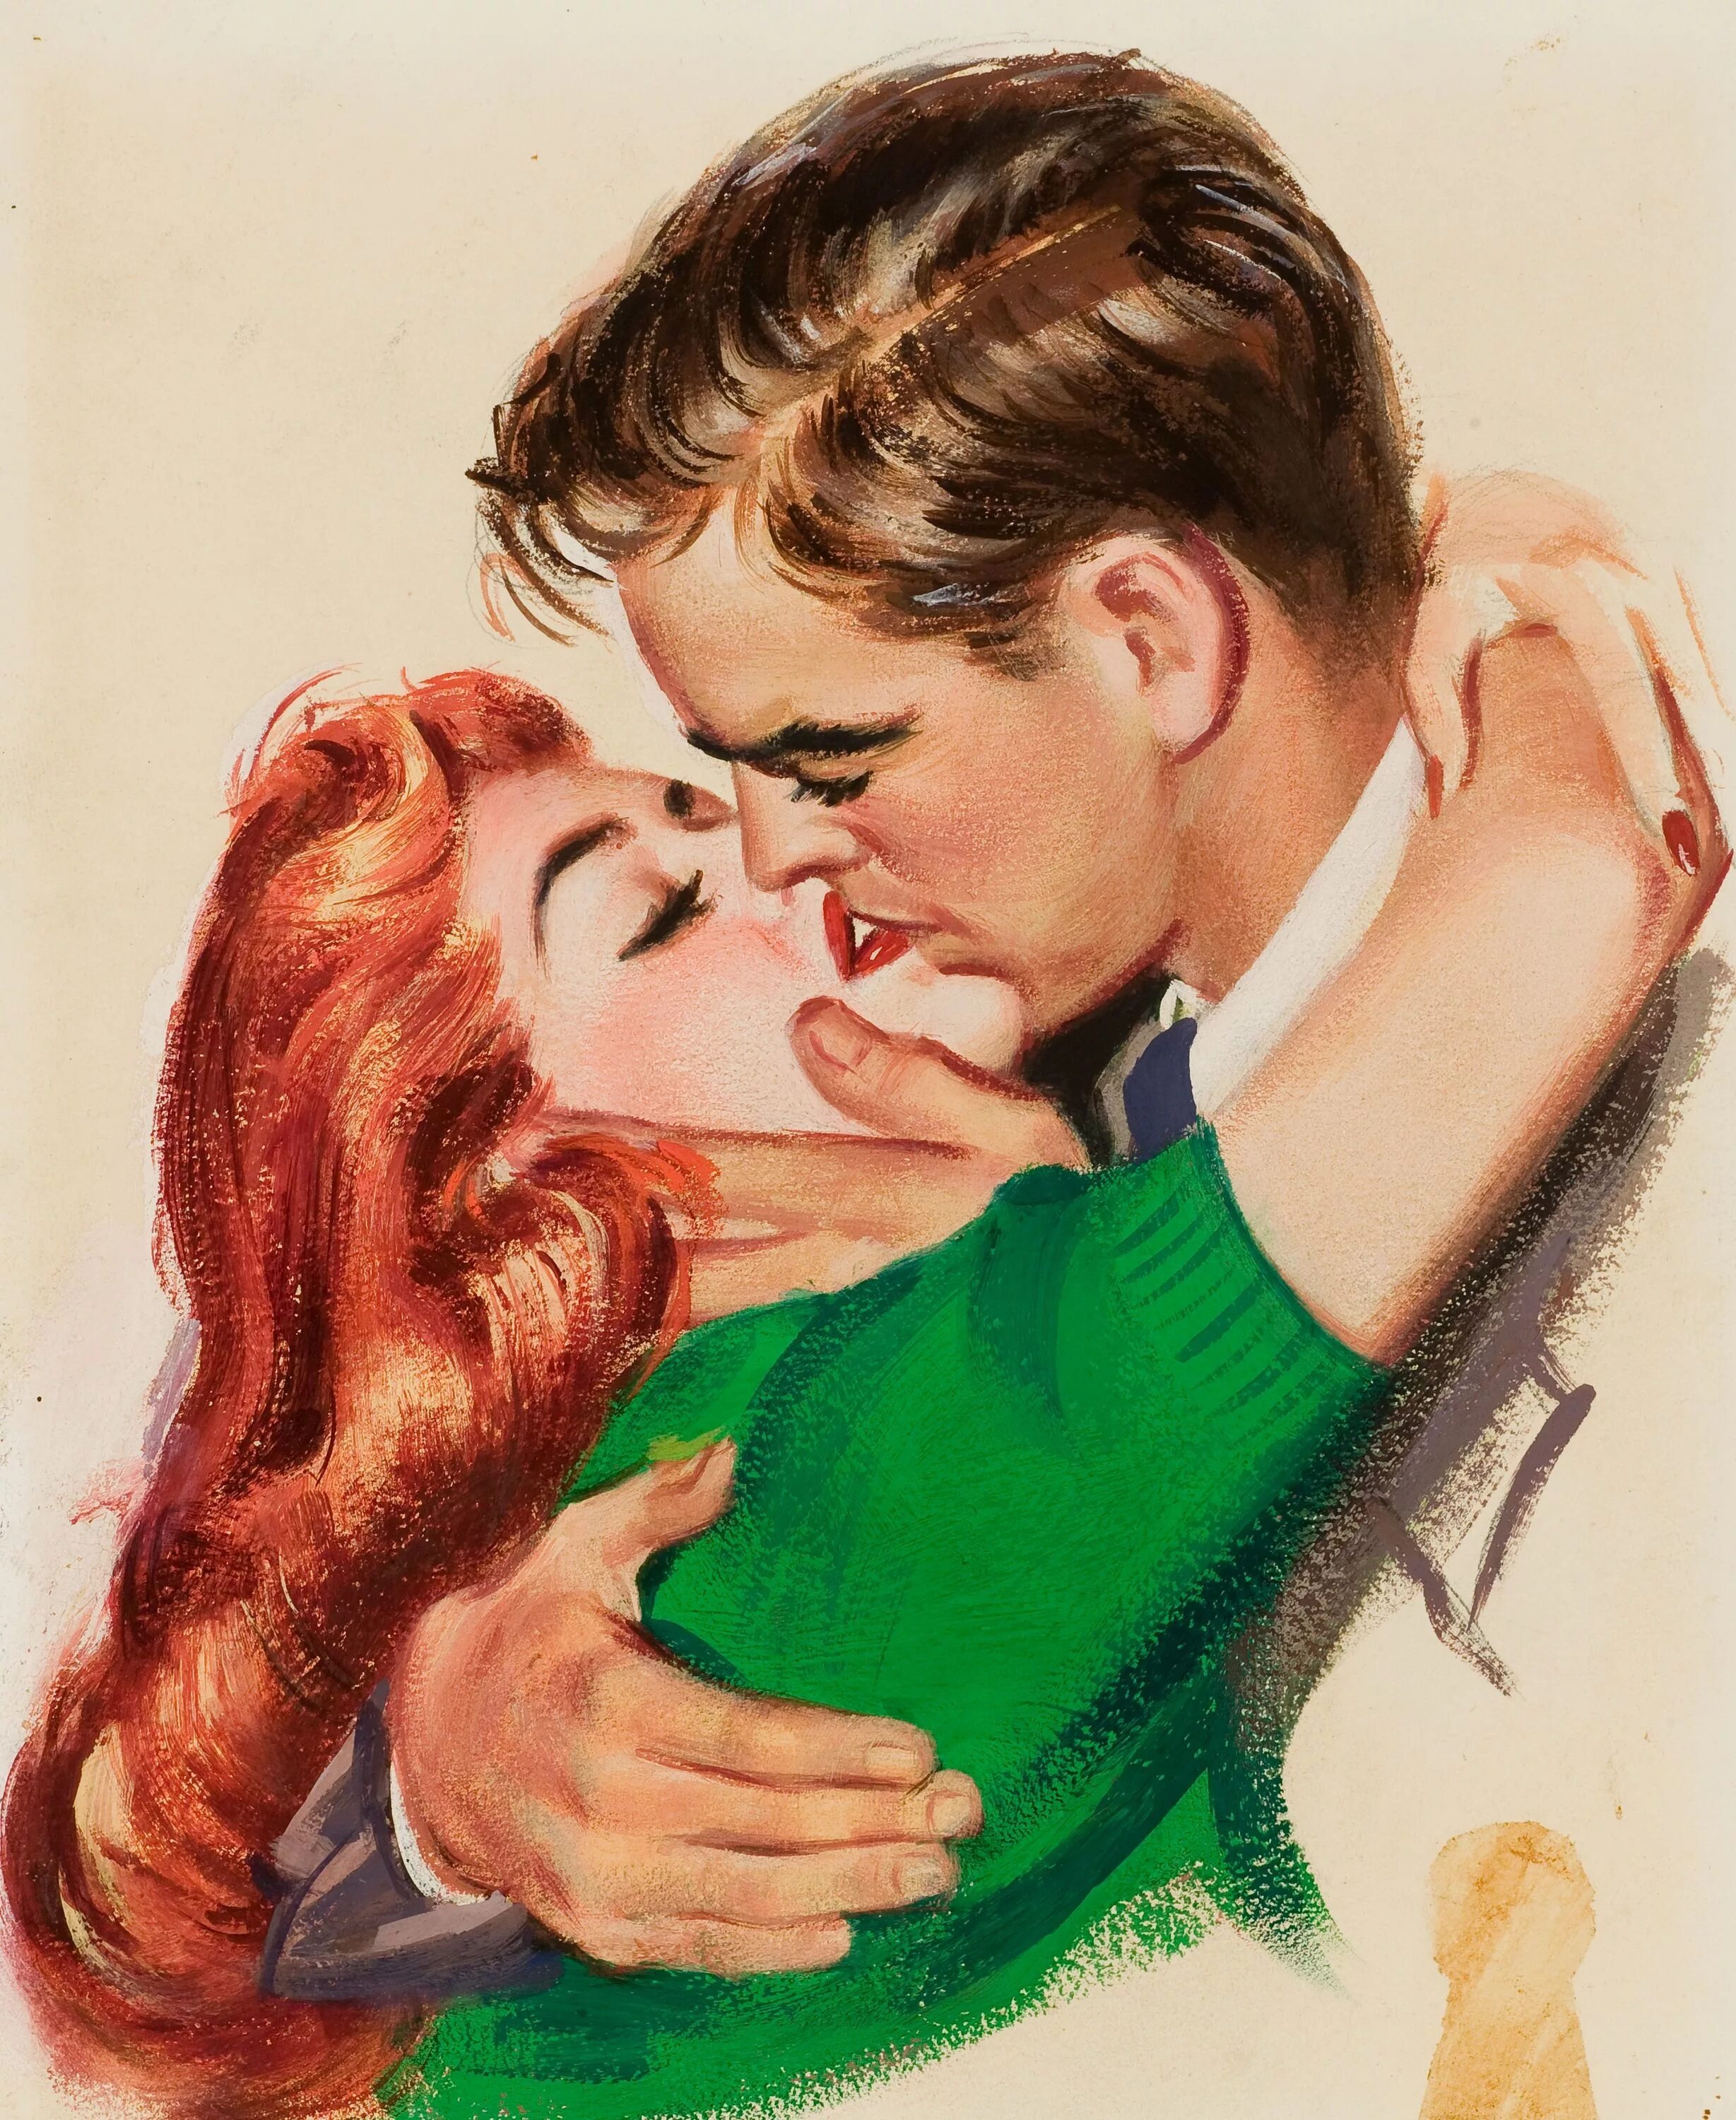 Поцелую между мужчинами. Иллюстратор: Джон Уиткомб. Джон Уиткомб картины. Джон Уиткомб иллюстрации. Пин ап мужчина и женщина.